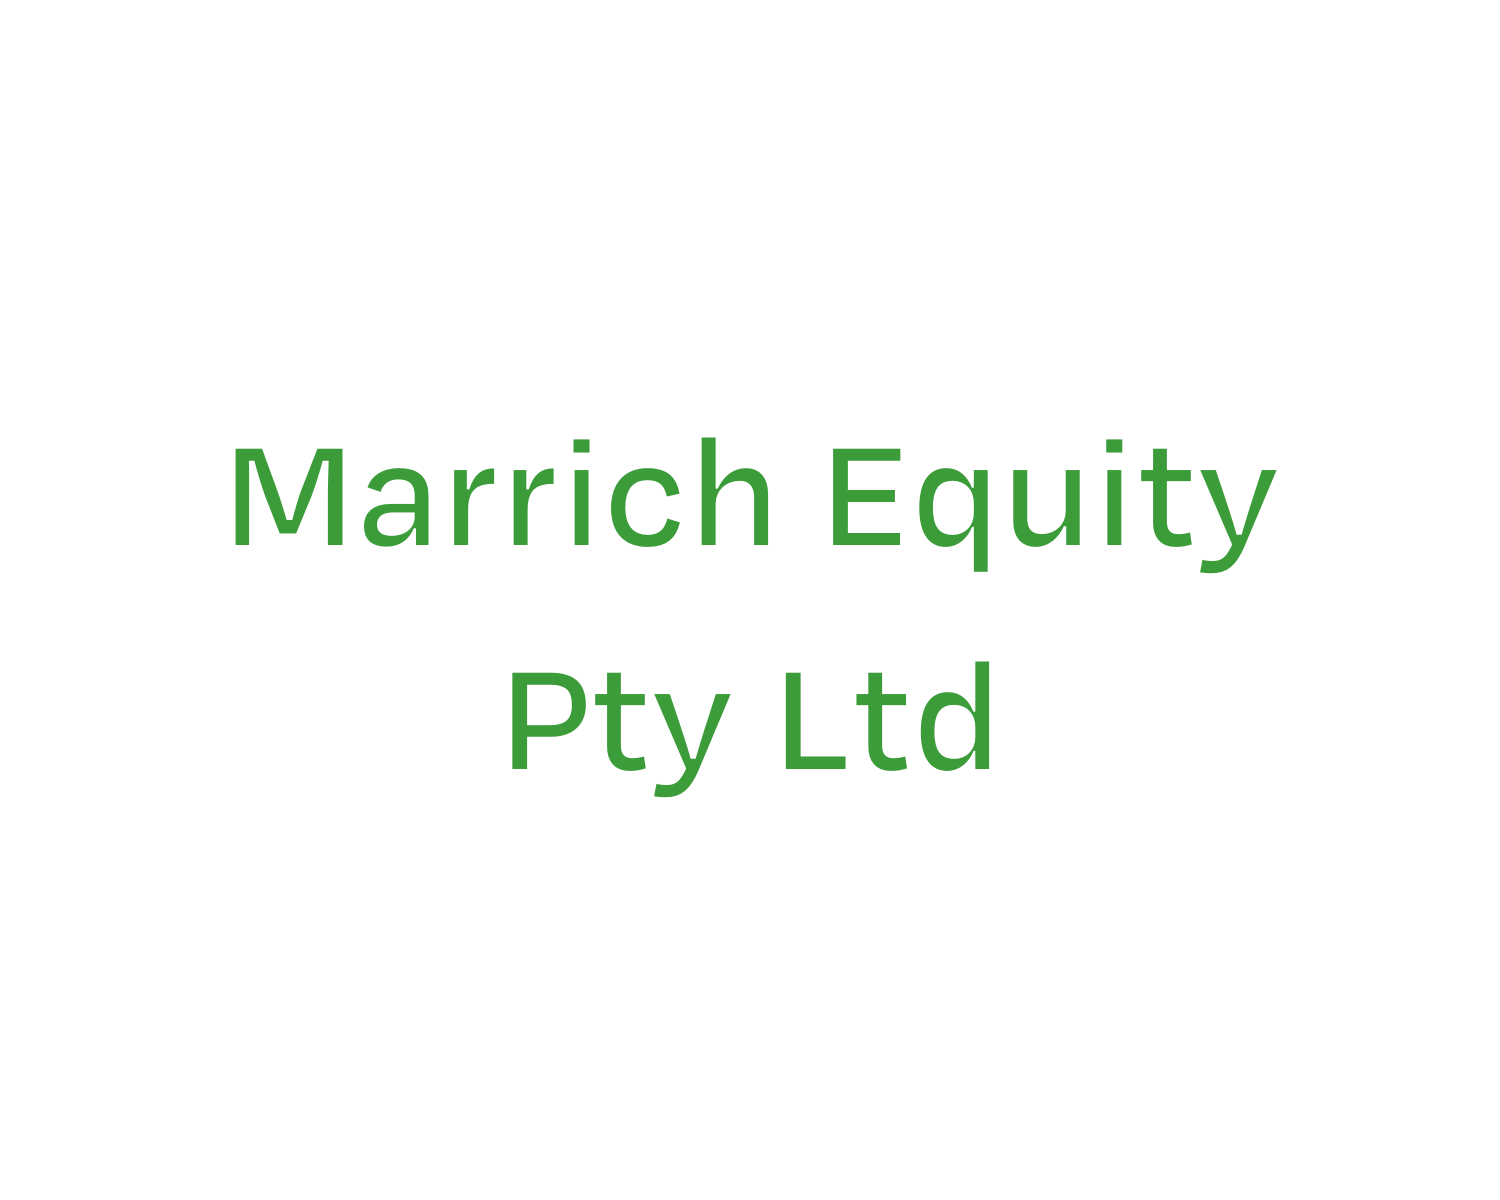 Marrich Equity Pty Ltd